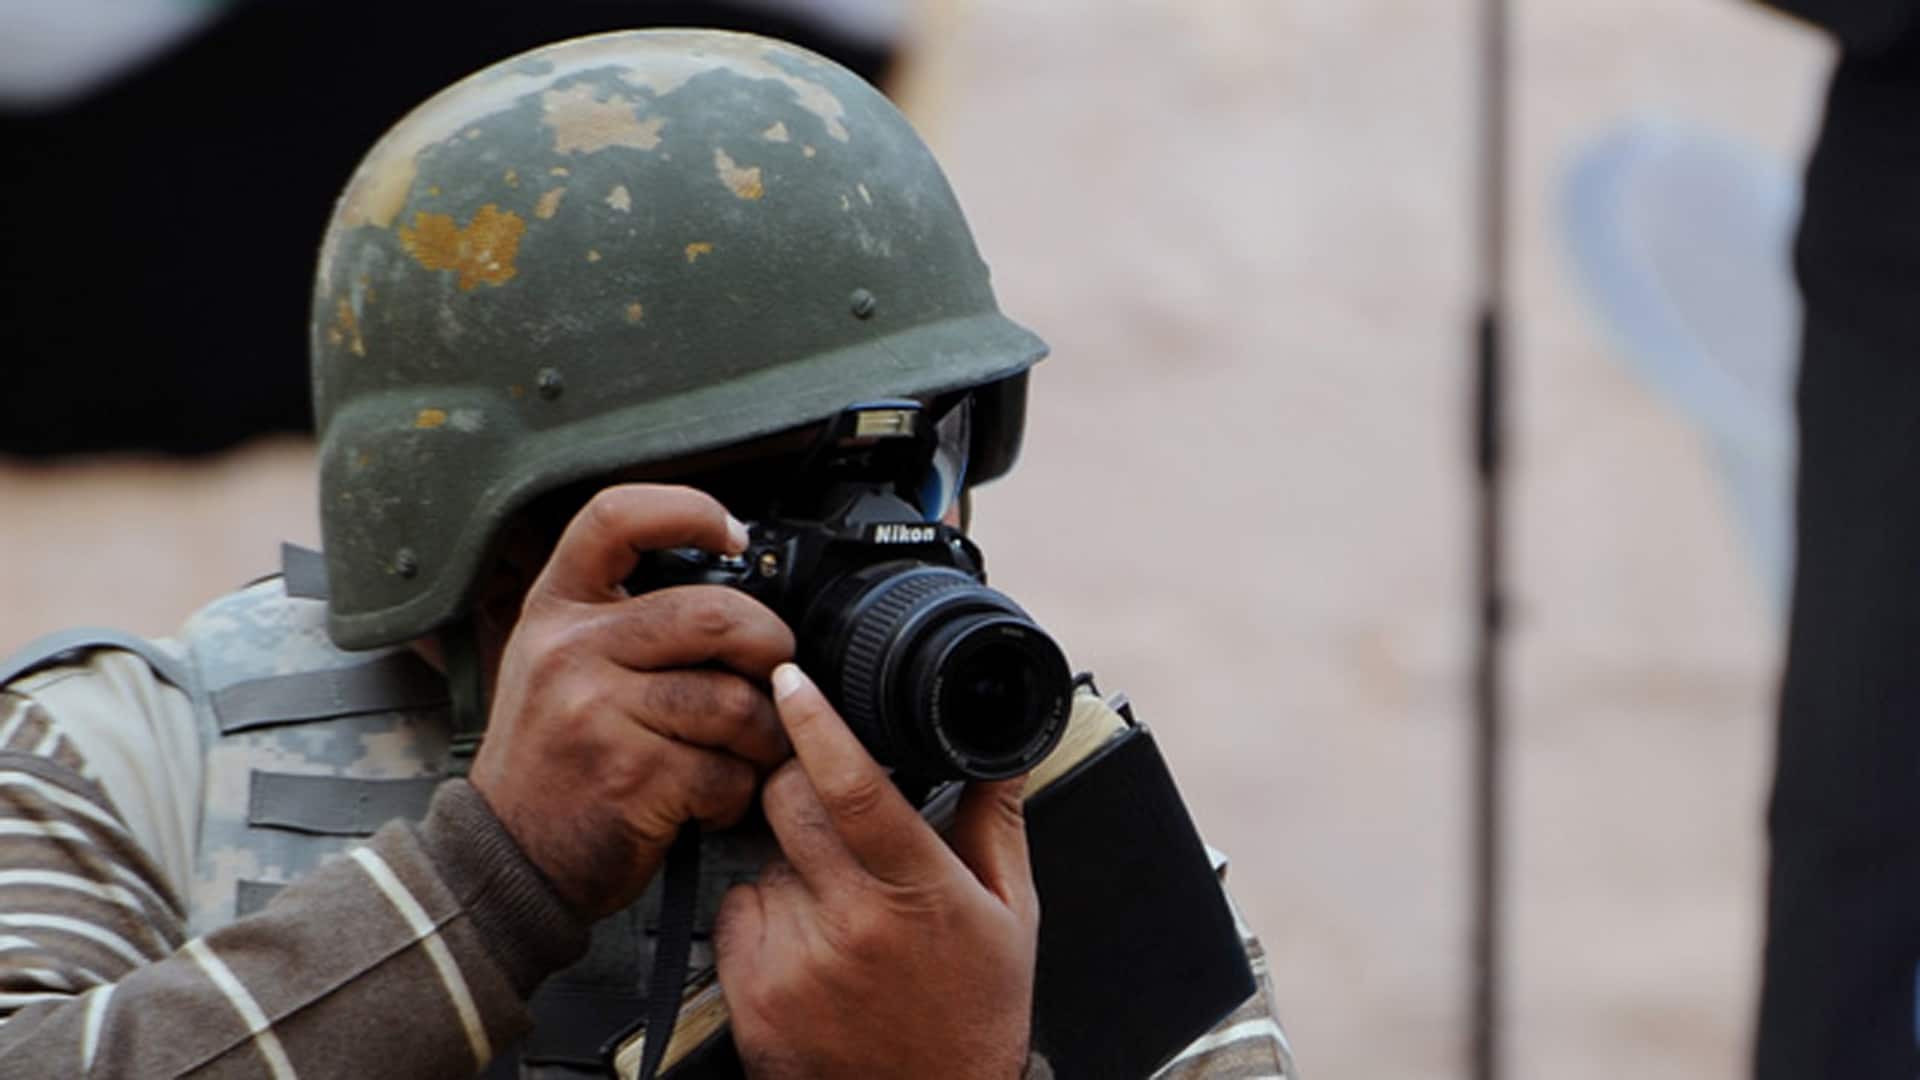 Journalisten sind weltweit durch Entführung und Gewalt bedroht